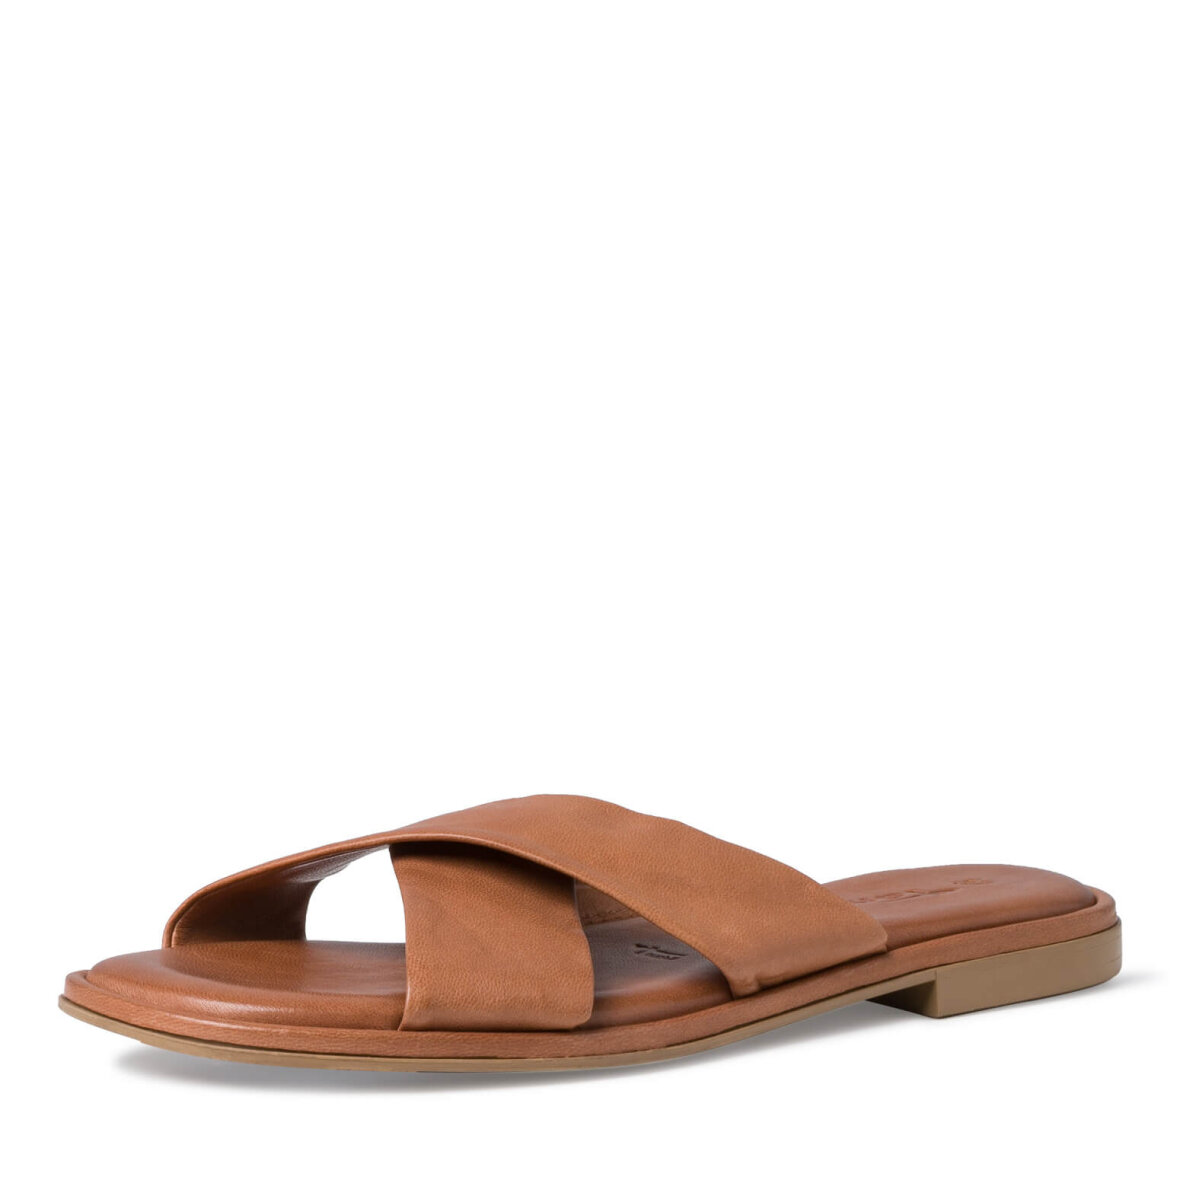 Kan forræder oplukker Blød Tamaris sandal i den skønne chestnut farve - ButikSØS